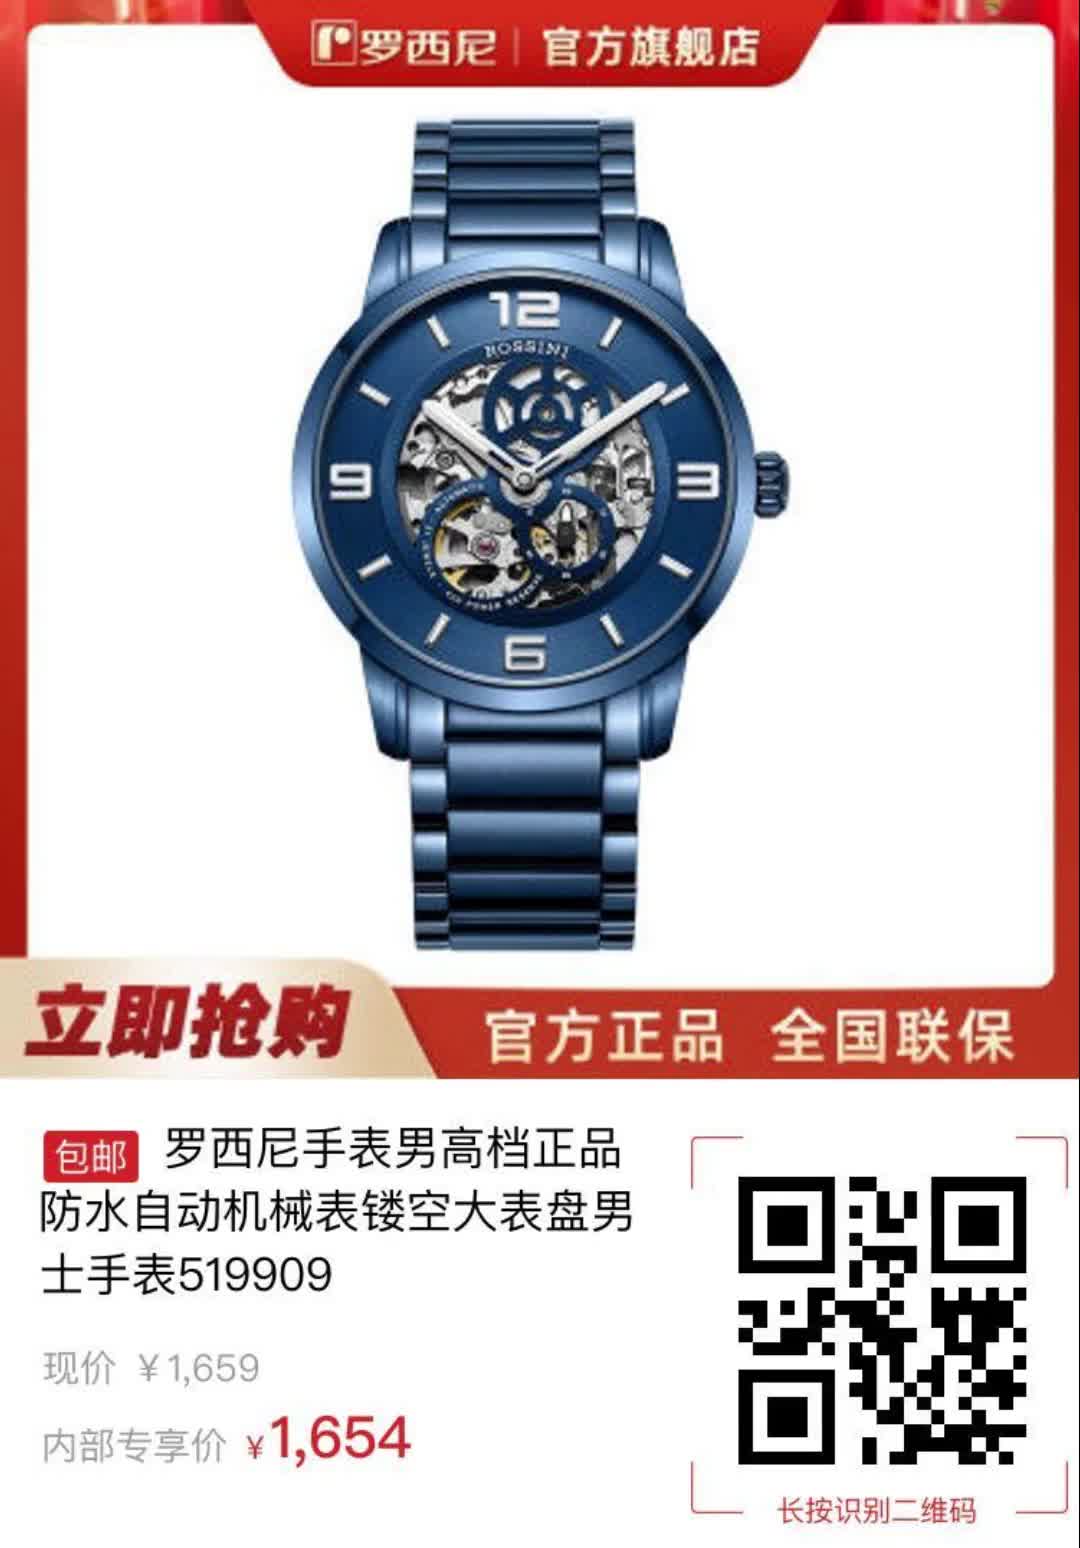 罗西尼手表价格 新款图片